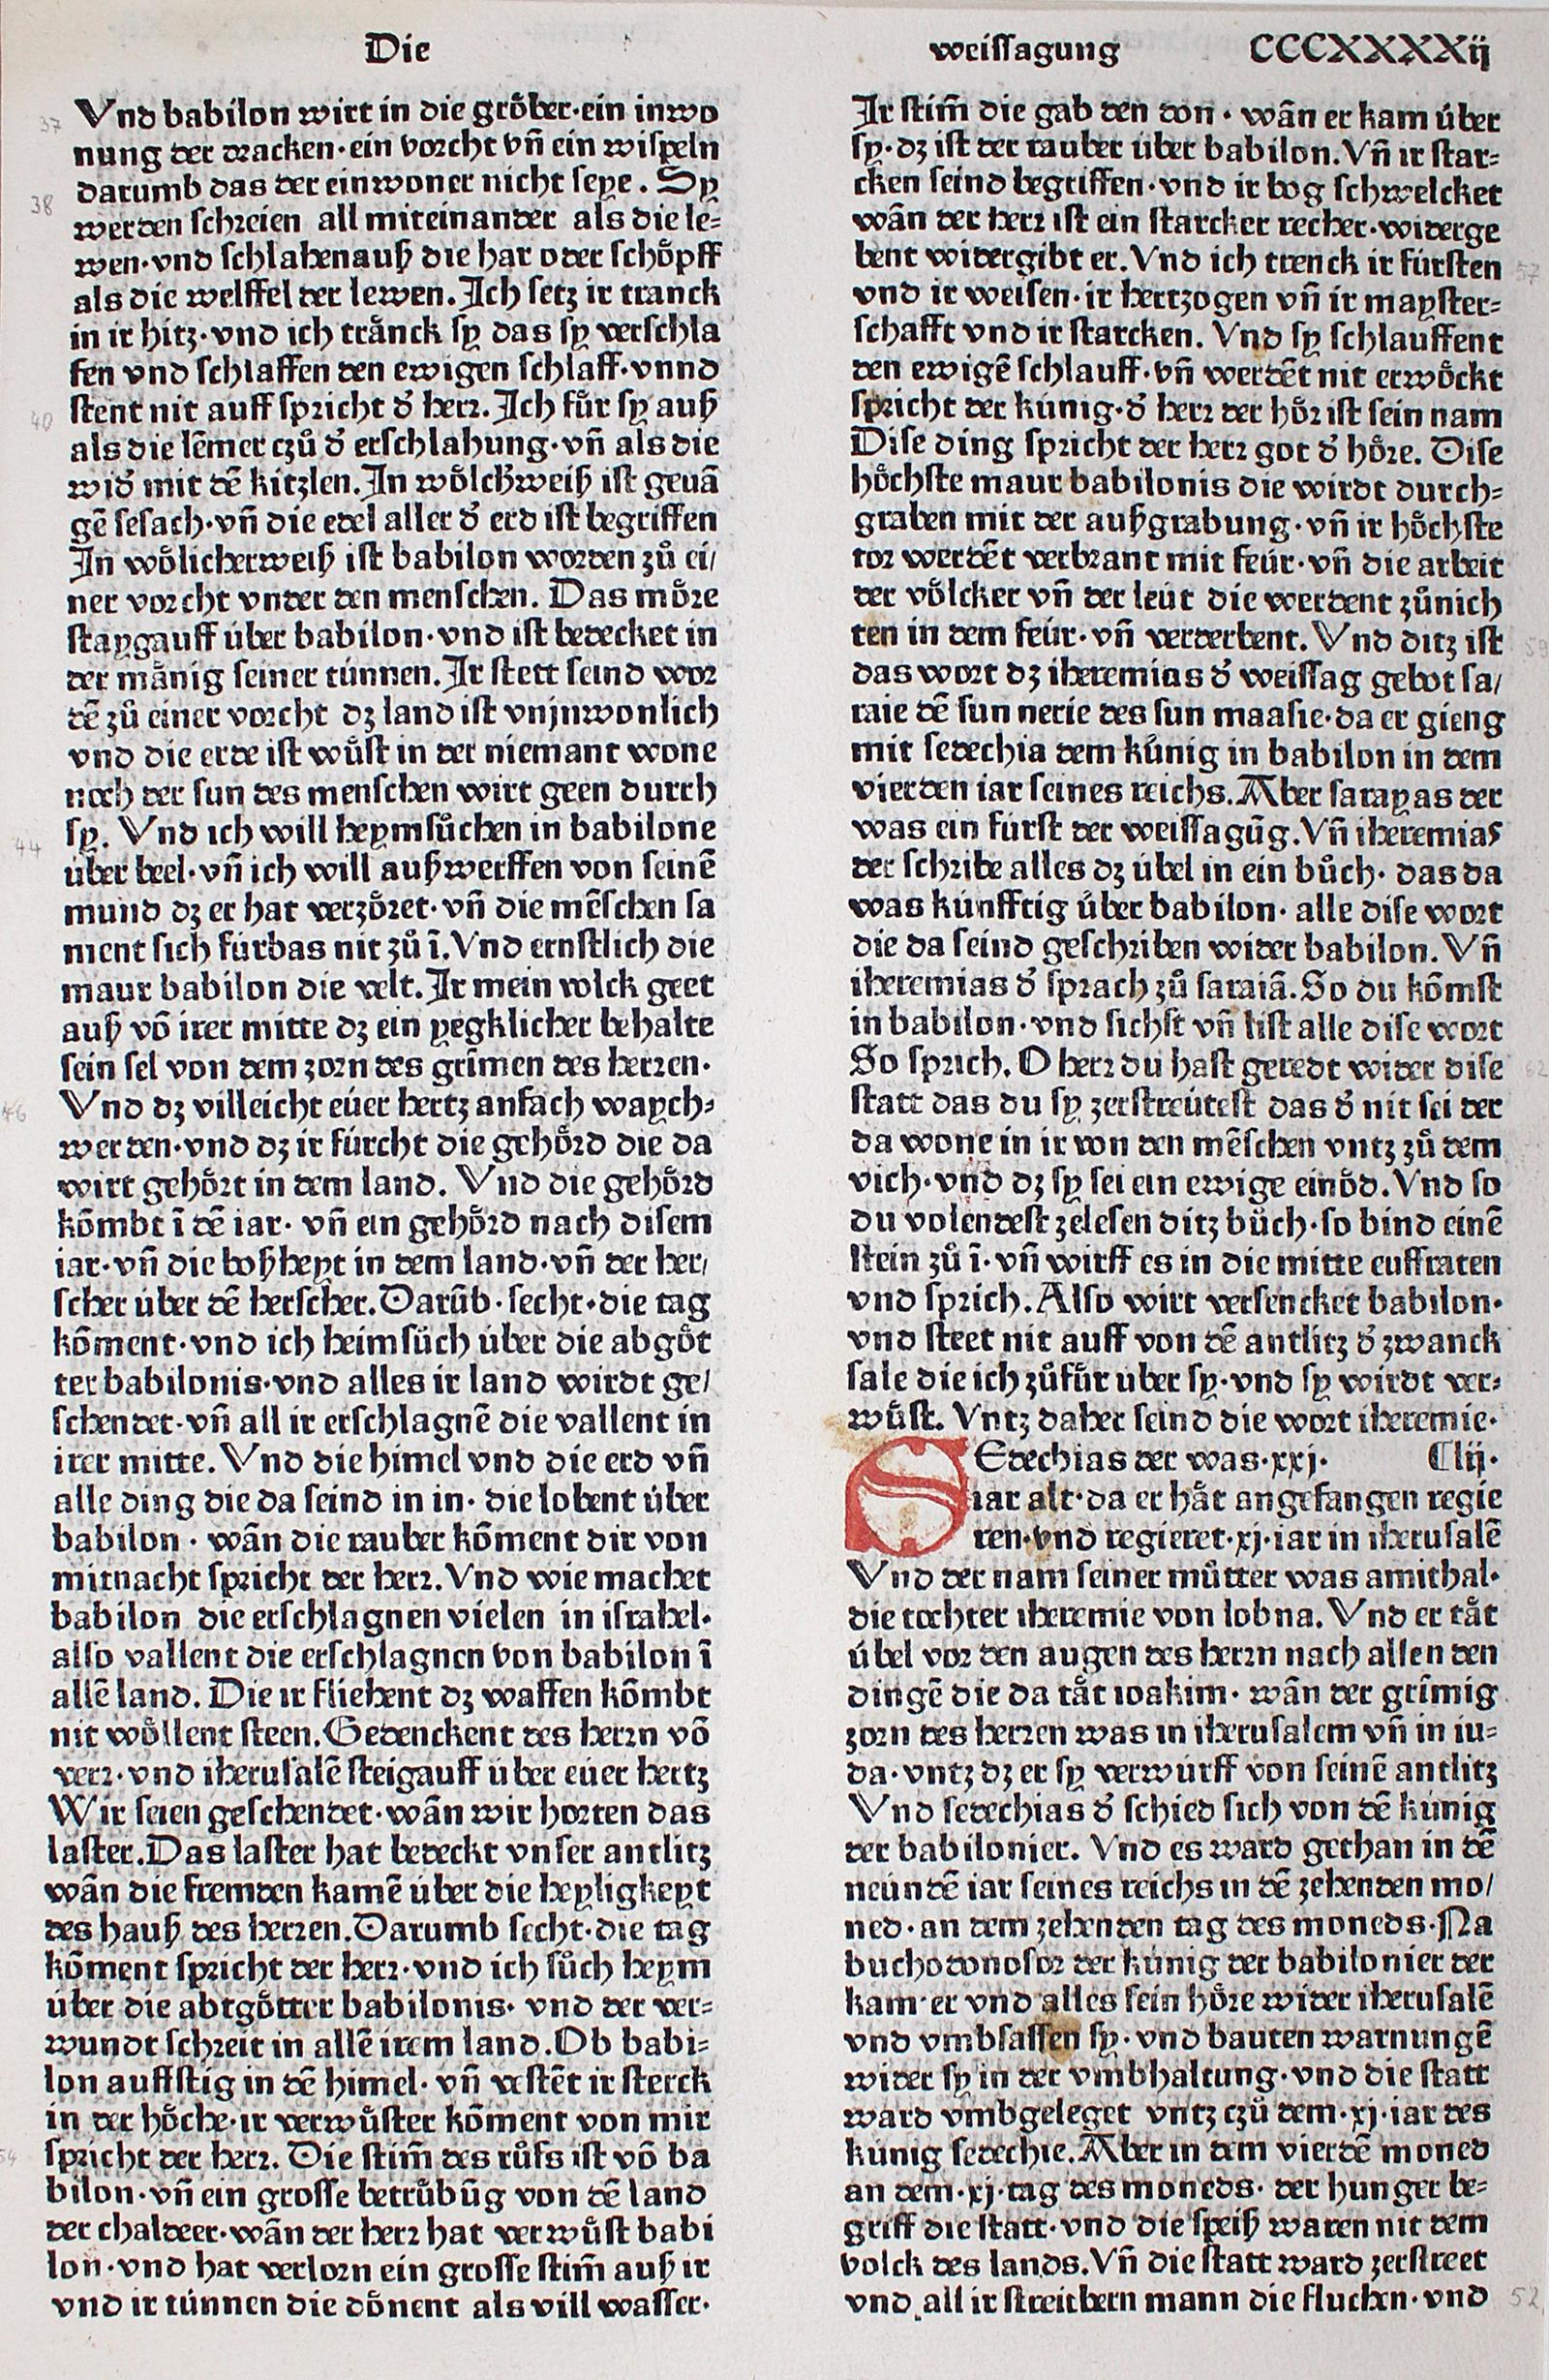 Biblia germanica. | Bild Nr.1